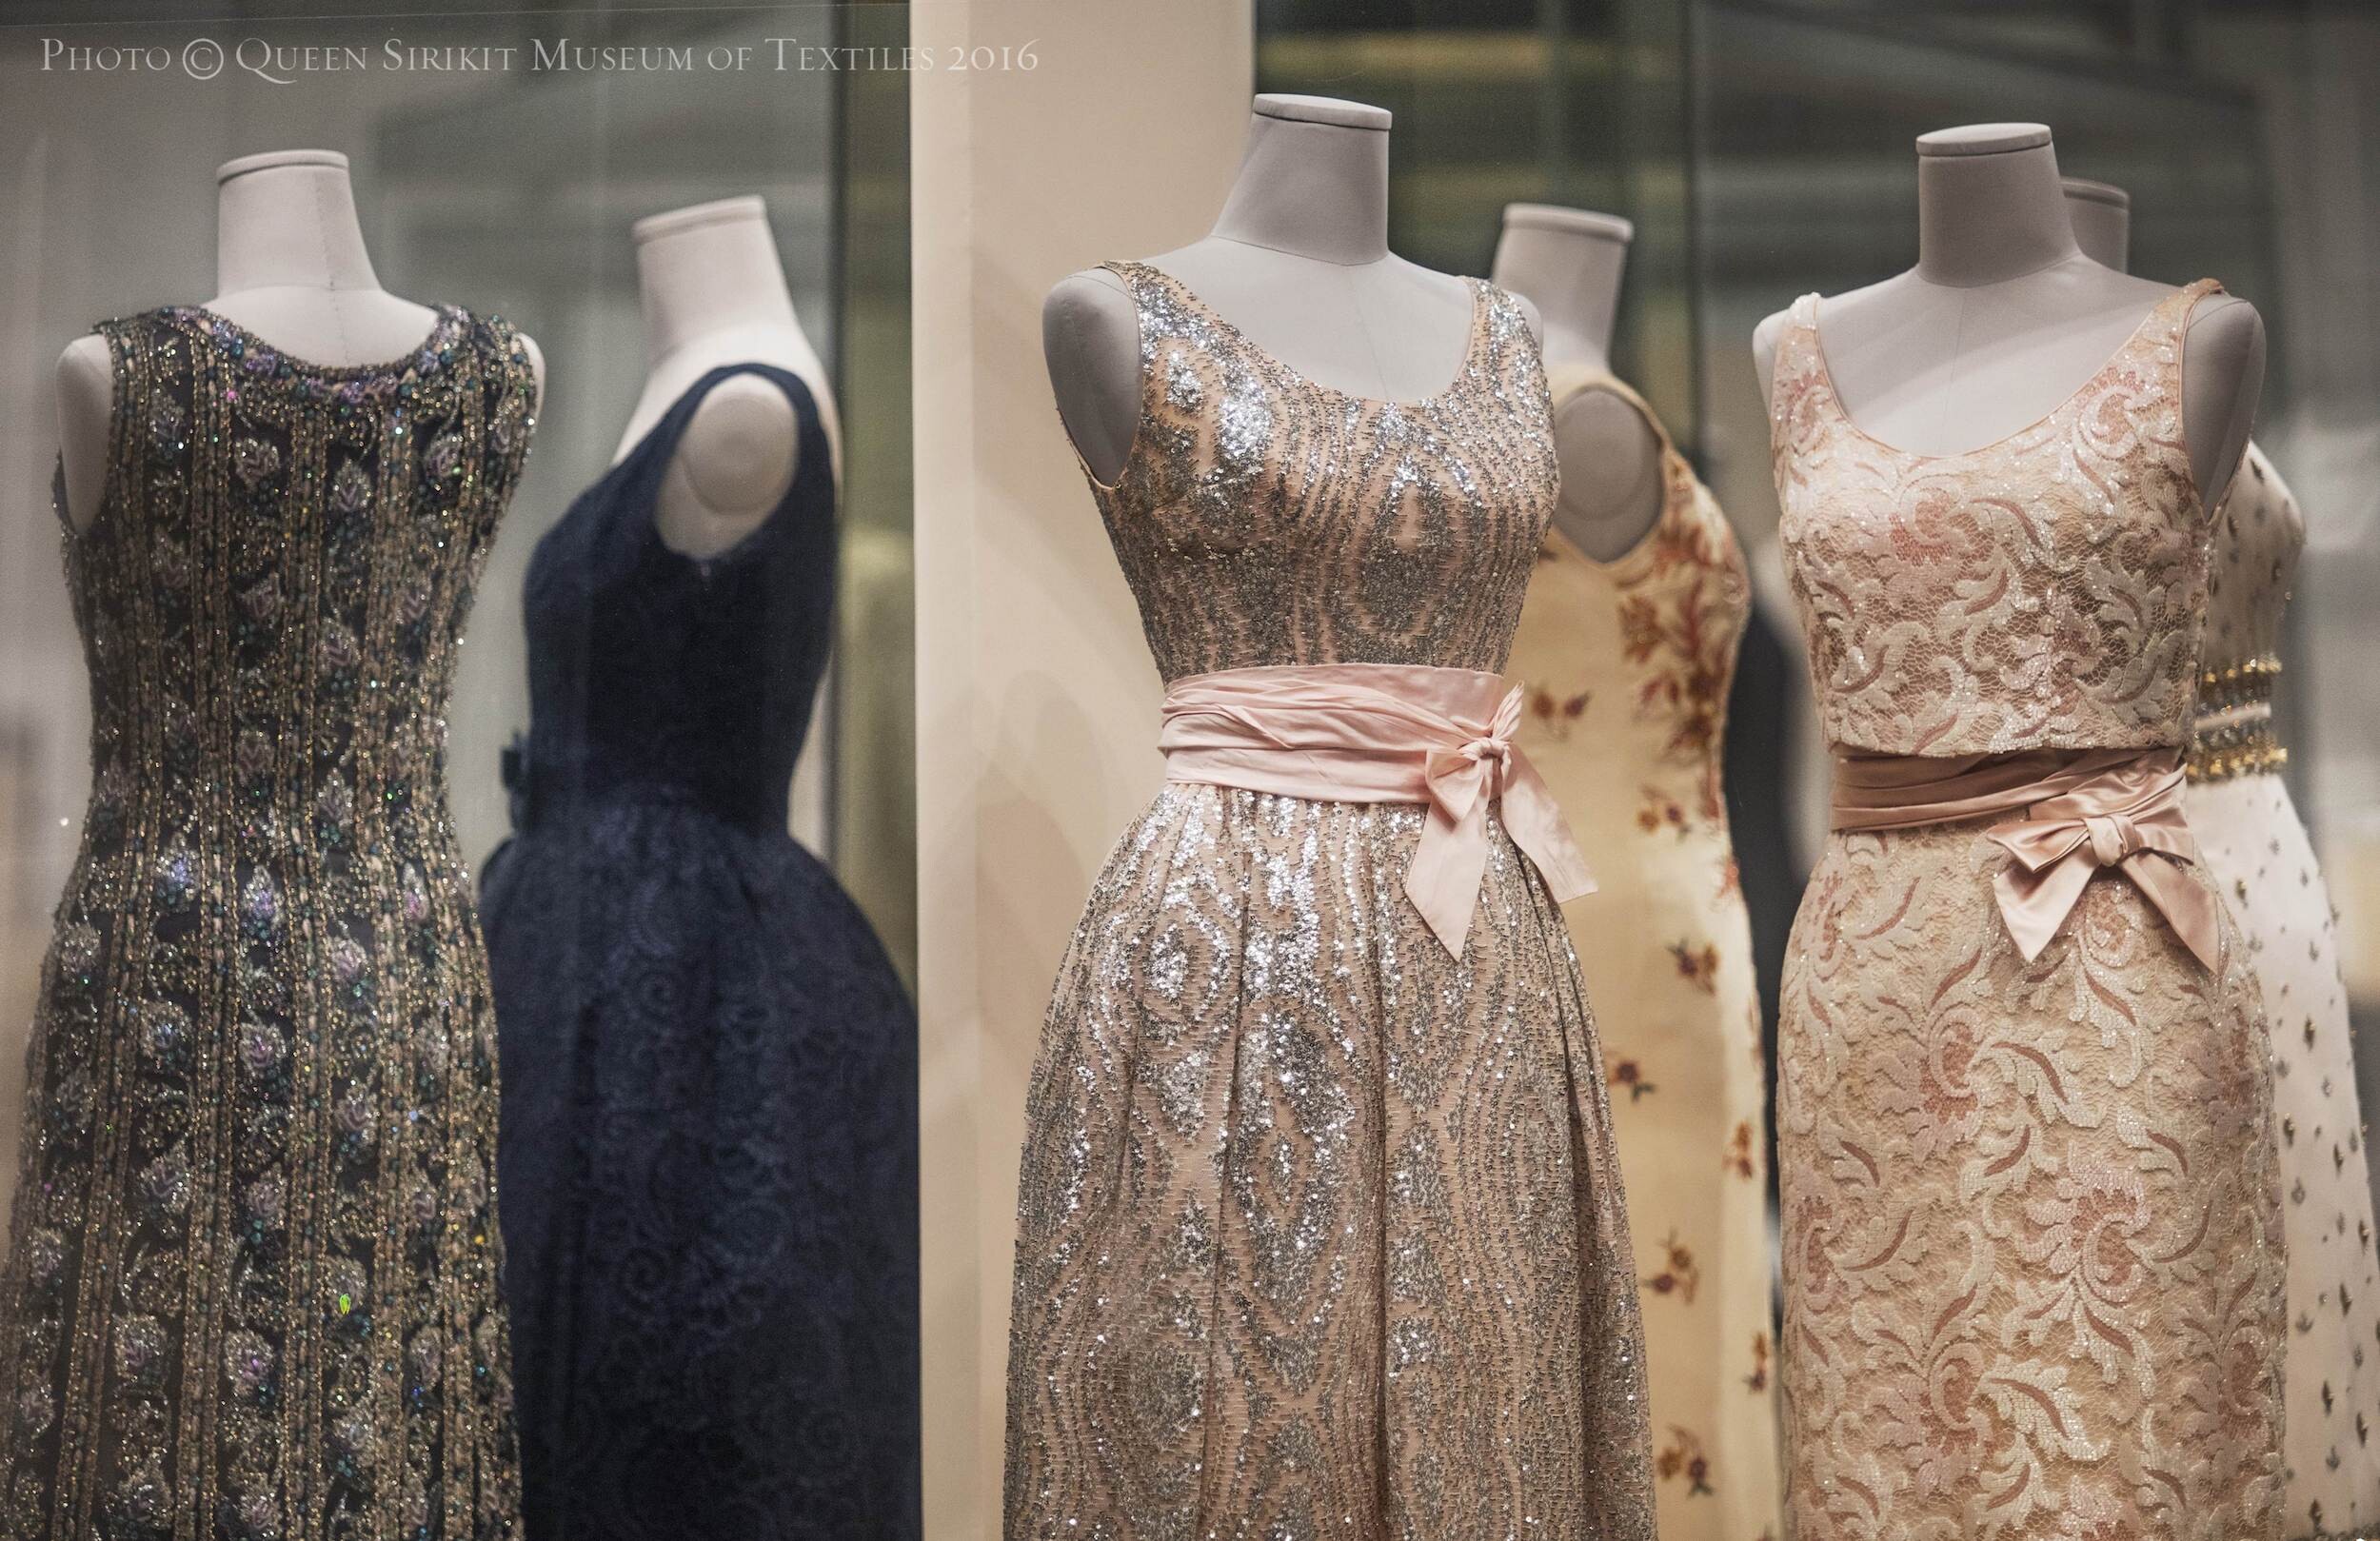 10 ปี พิพิธภัณฑ์ผ้าฯ เปิดโลกและเรียนรู้ประวัติศาสตร์ทรงคุณค่า ผ่านเรื่องราวของผ้า